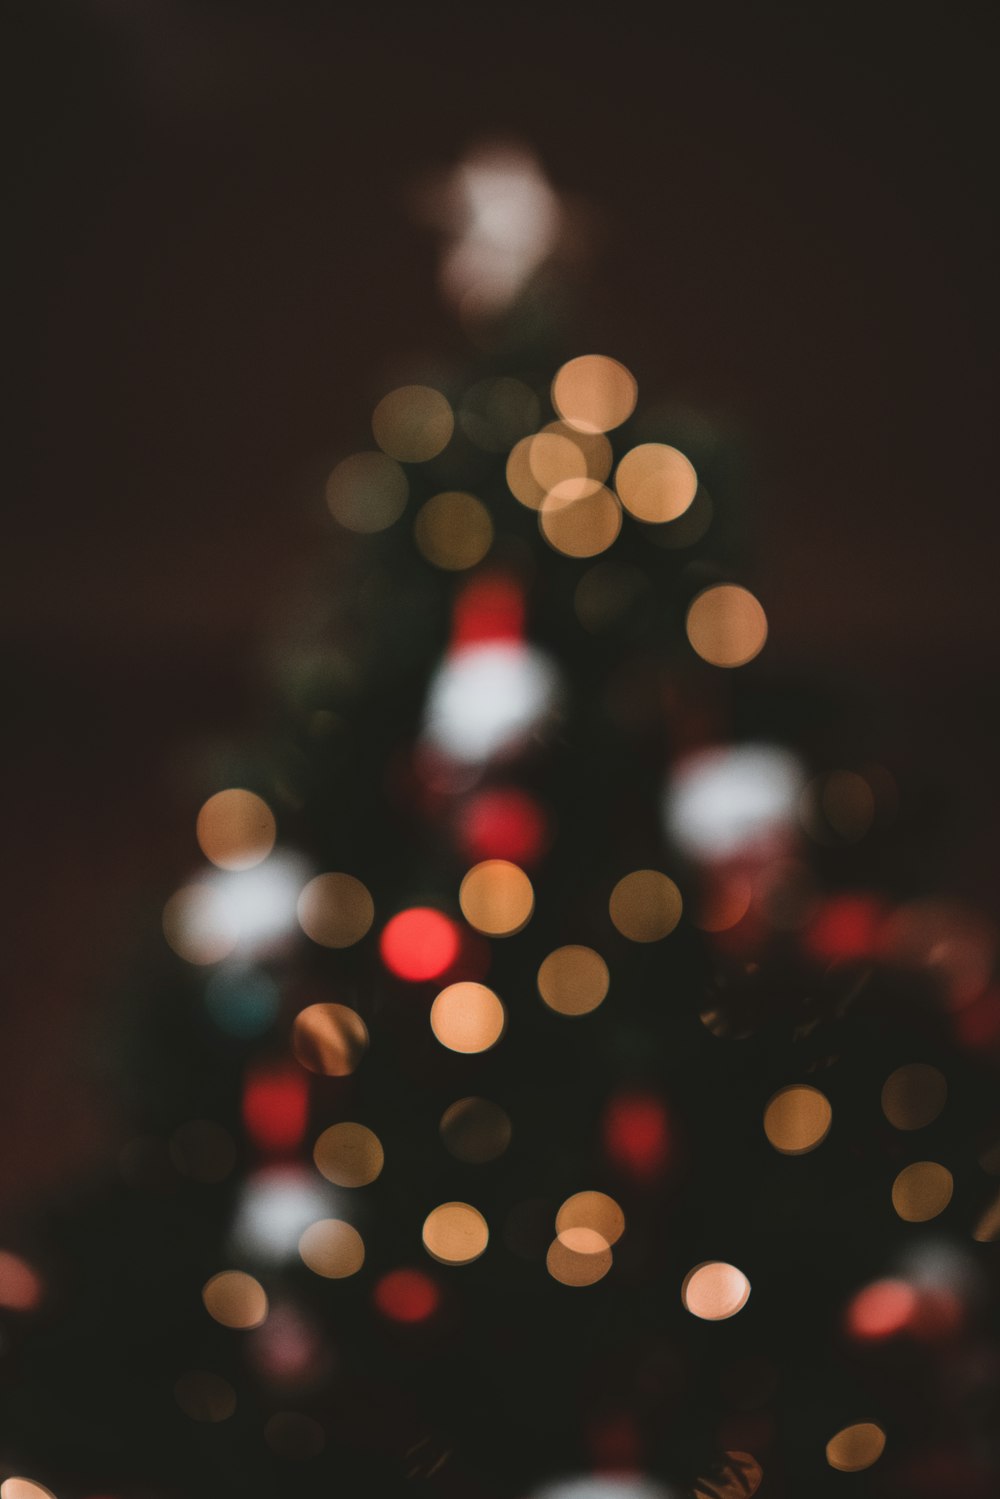 fotografia bokeh dell'albero di Natale con le luci